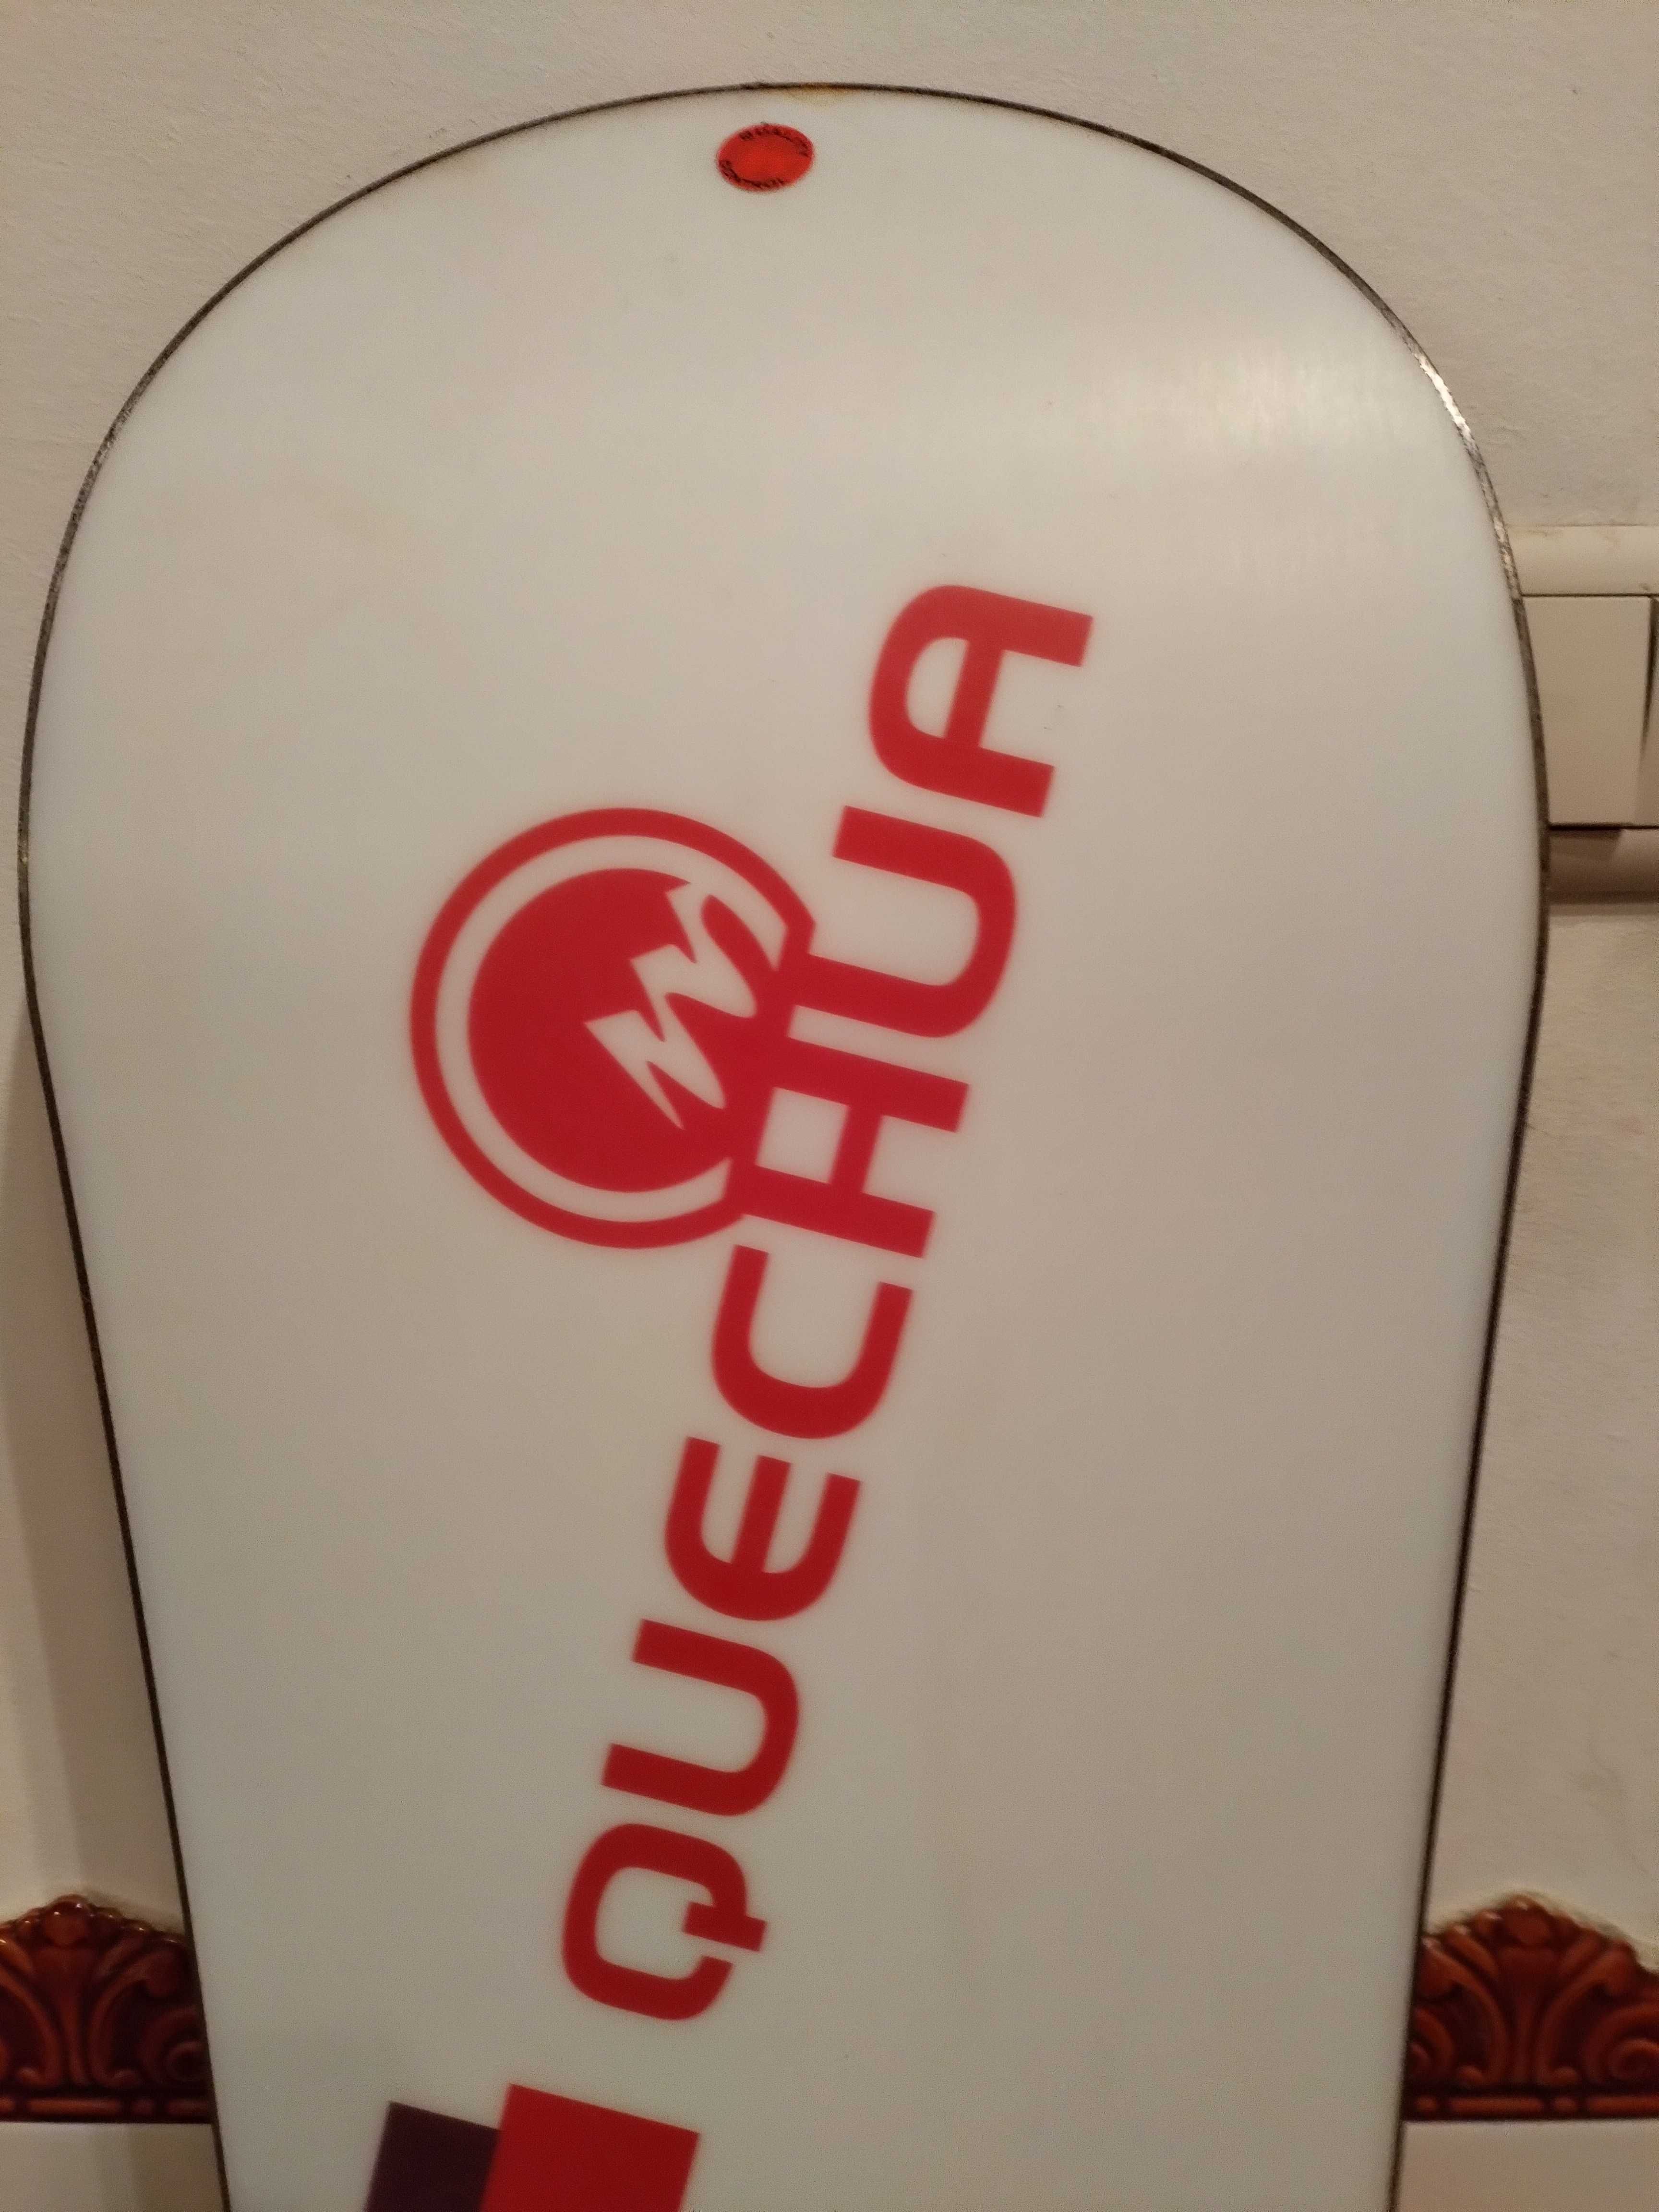 Prancha de snow board nova mais fixadores ( 150€)